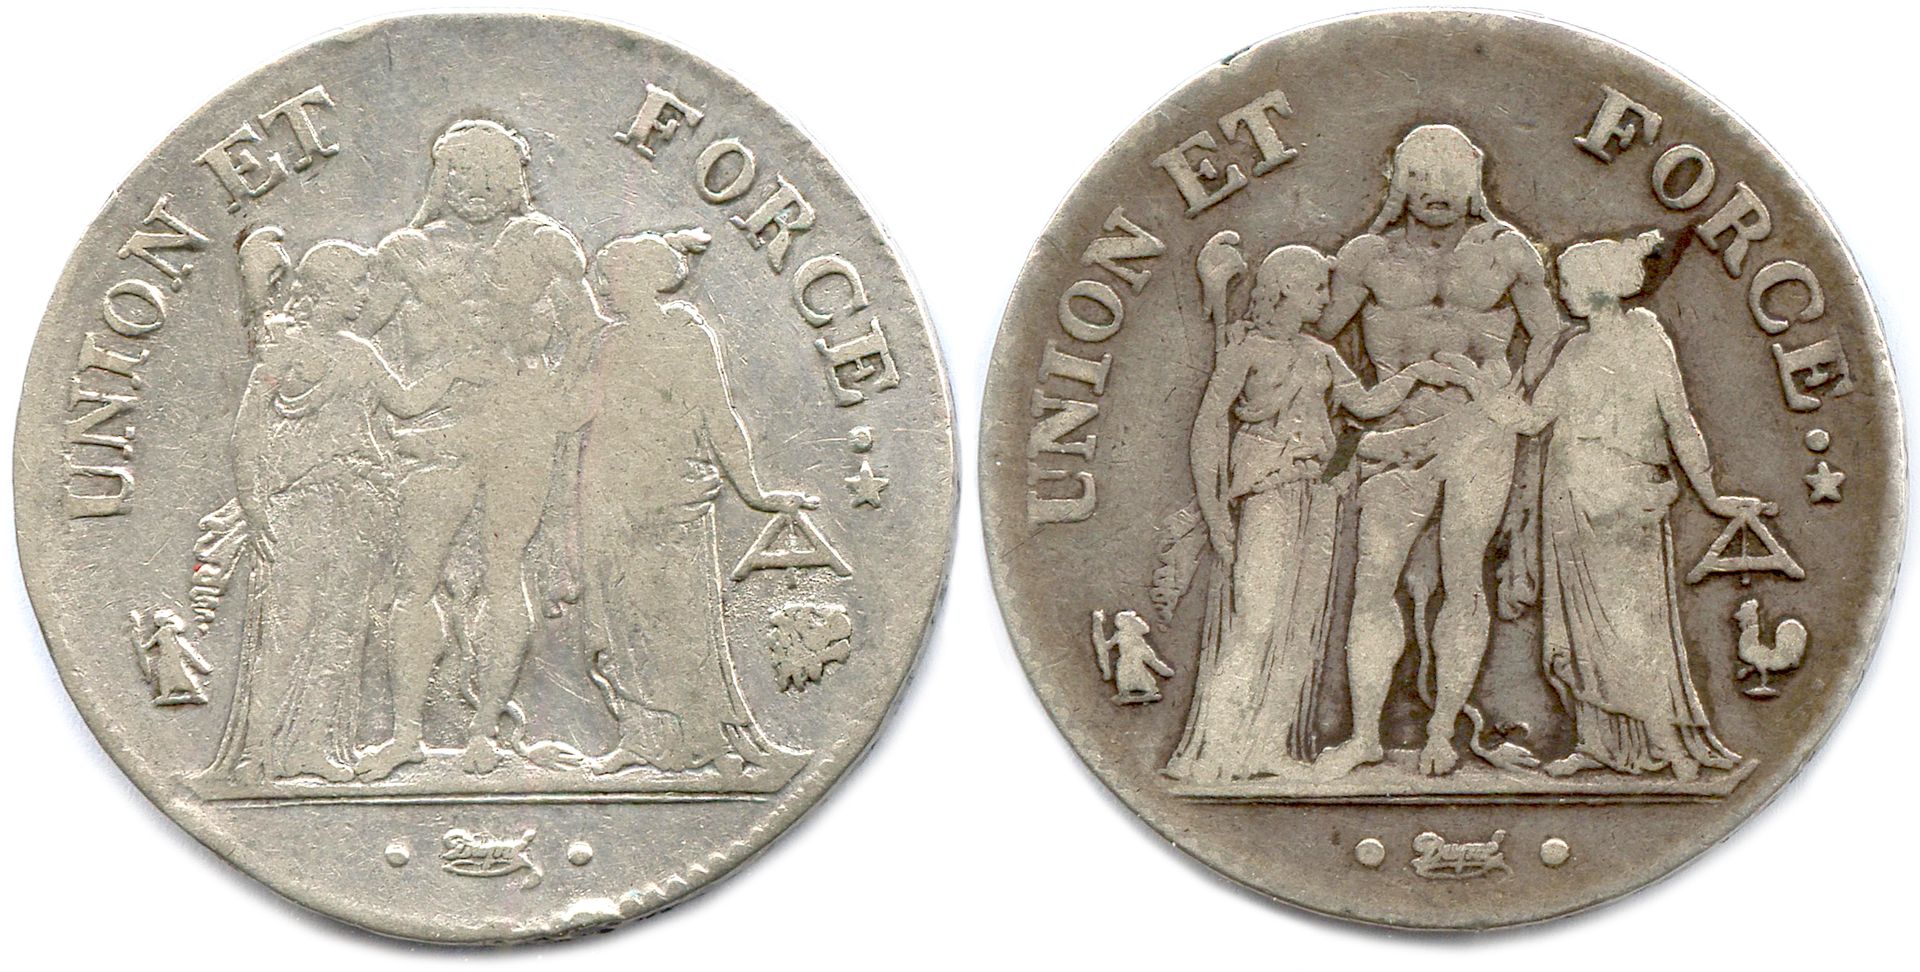 Null DIRECTORIO 23 de octubre de 1795 - 10 de noviembre de 1799

Dos monedas: 5 &hellip;